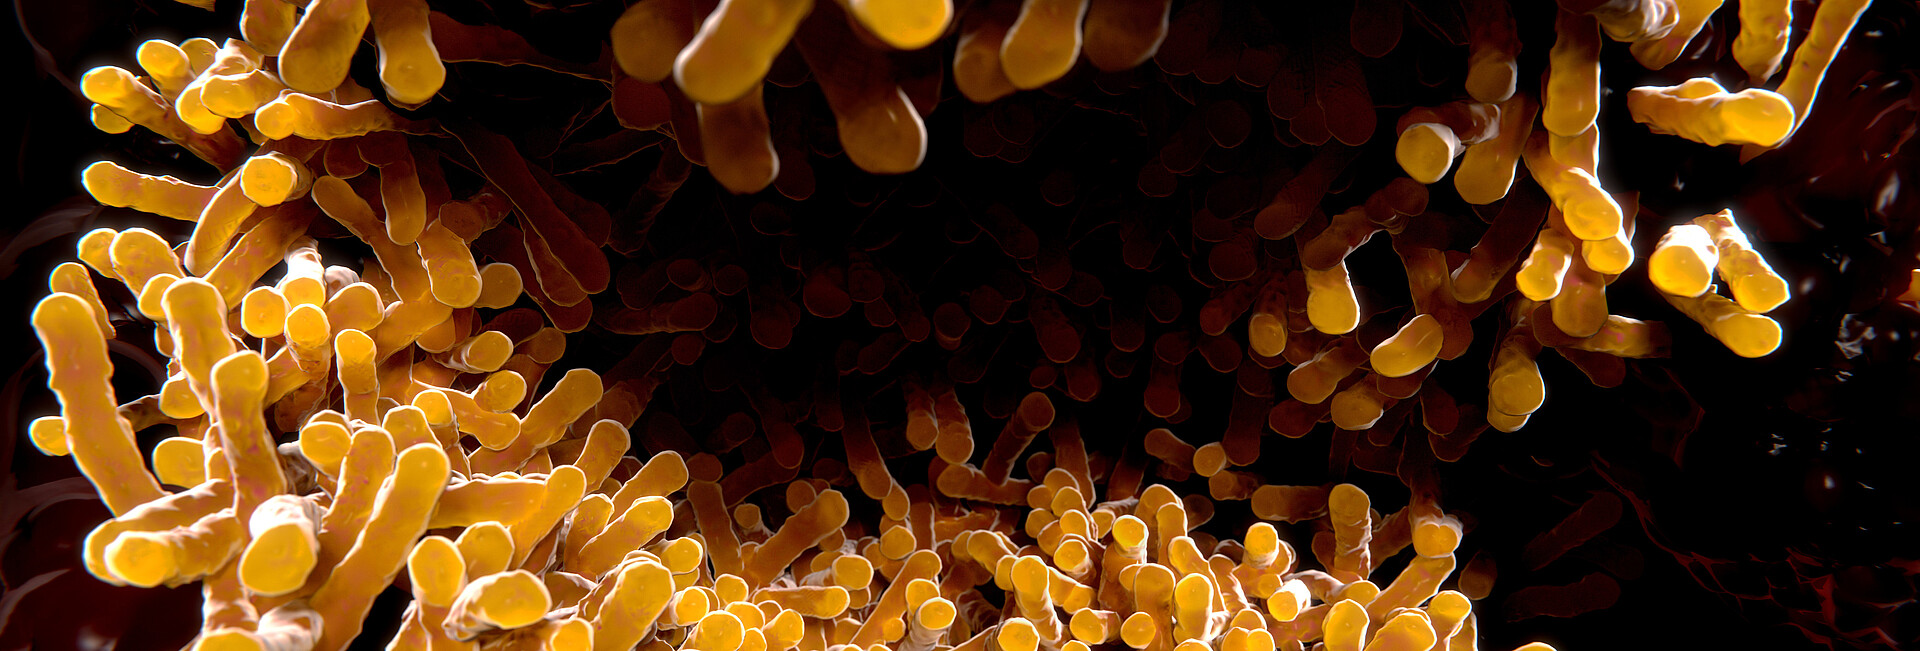 Tuberkulose-Bakterien unter dem Mikroskop